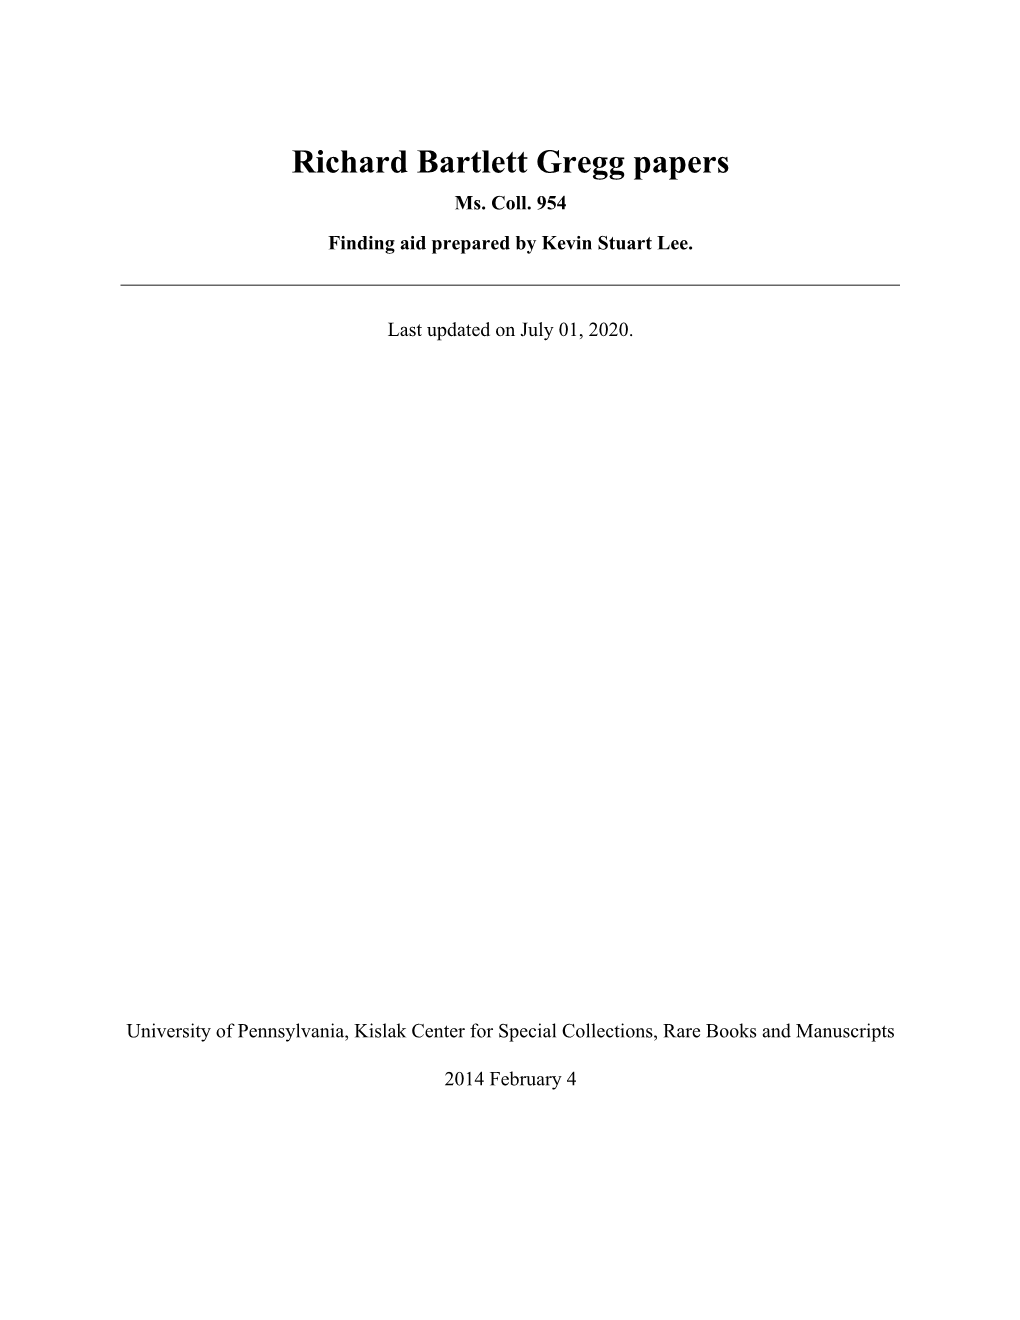 Richard Bartlett Gregg Papers Ms